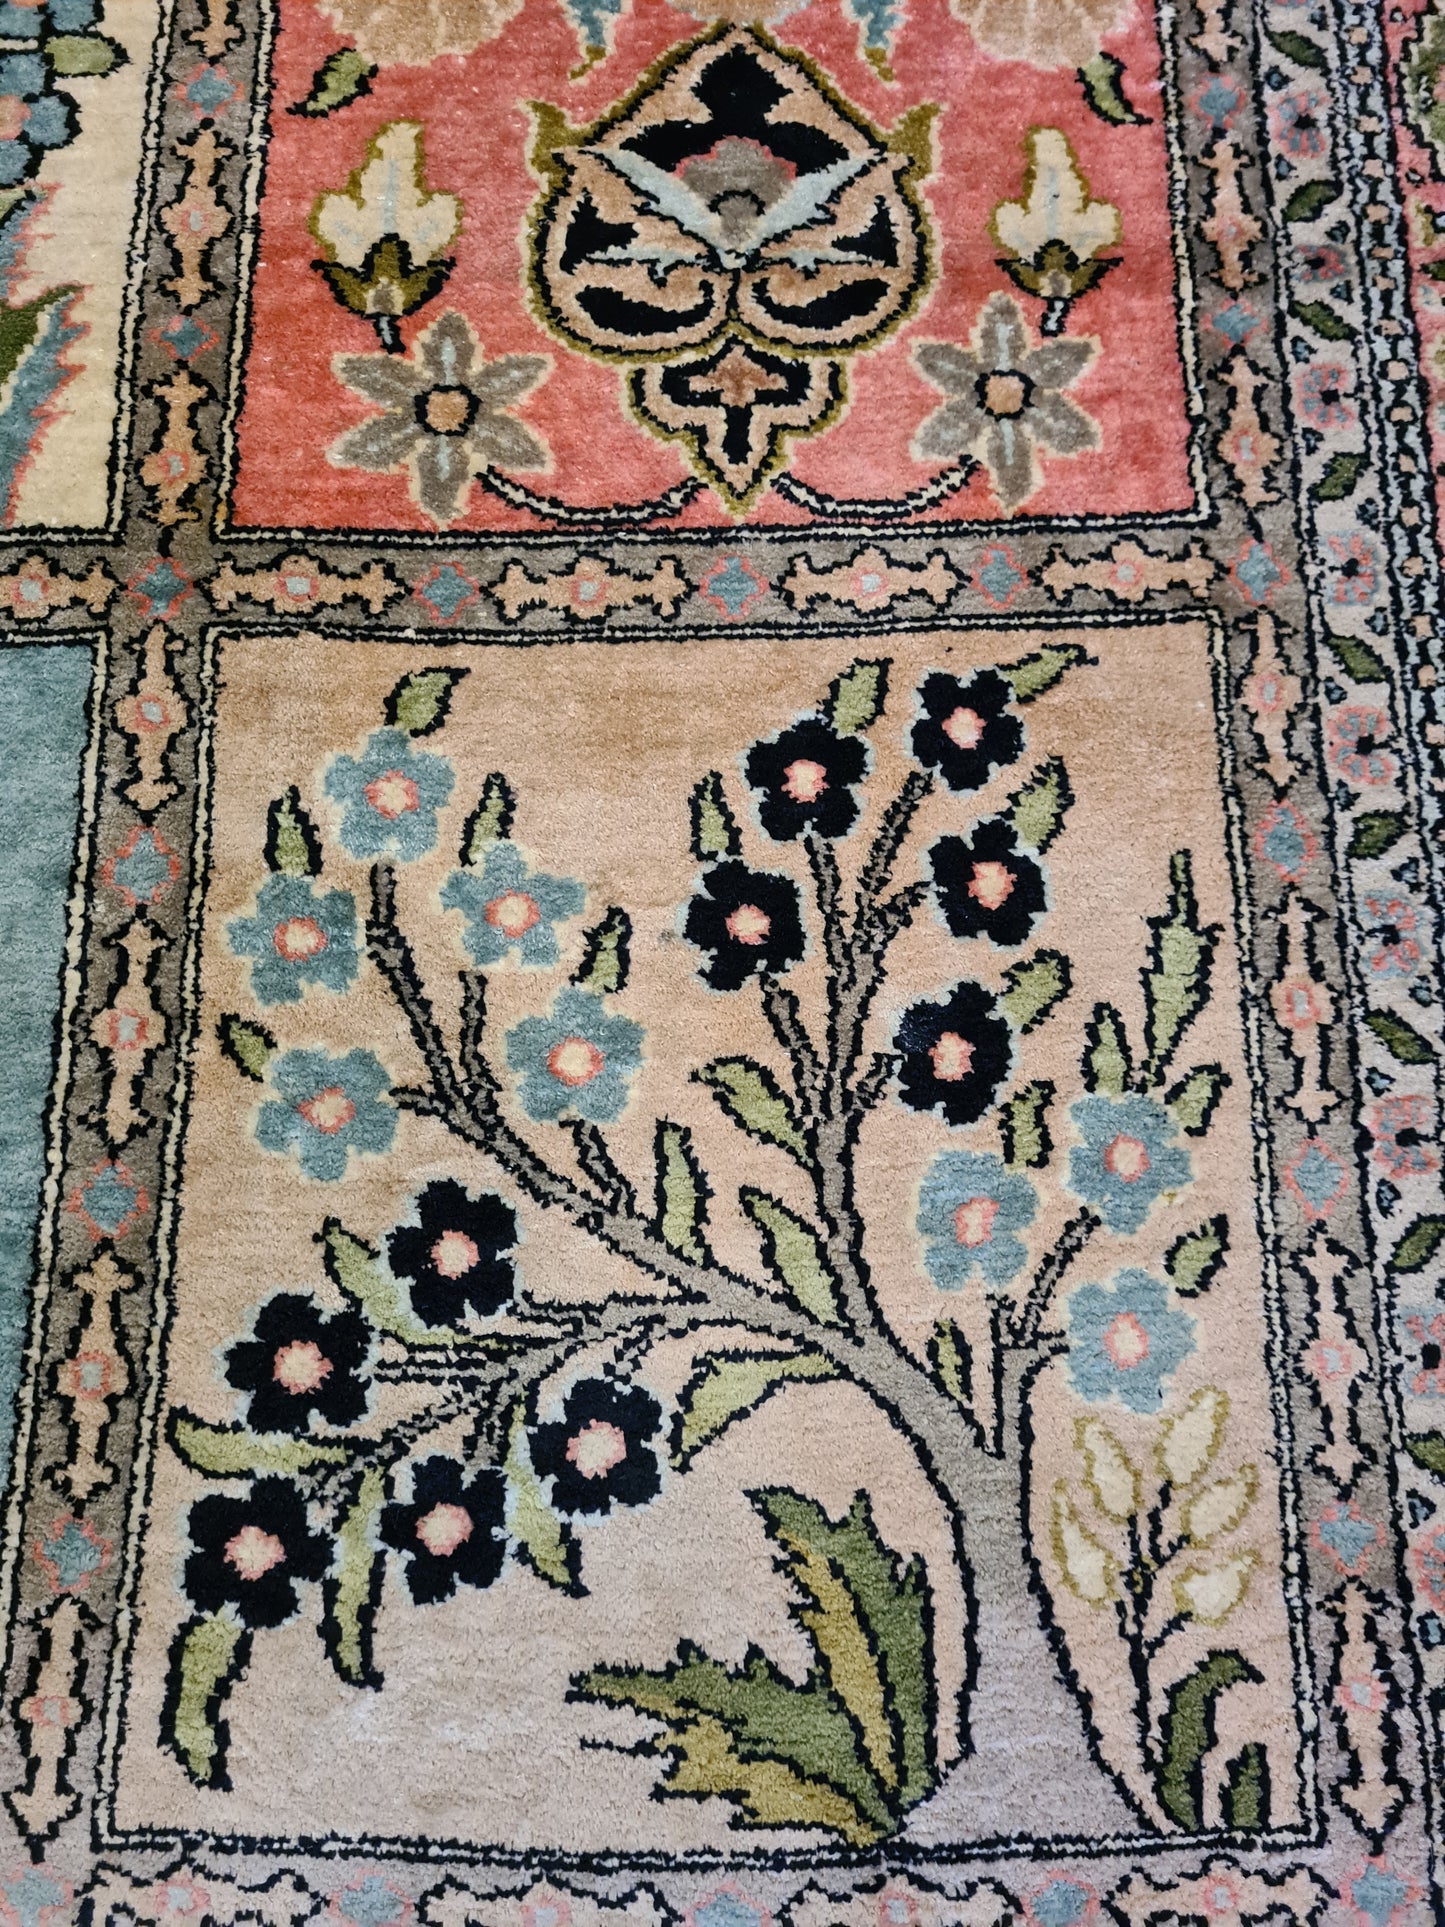 Prachtvoller Handgeknüpfter Seidenteppich aus Kashmir 152x92cm